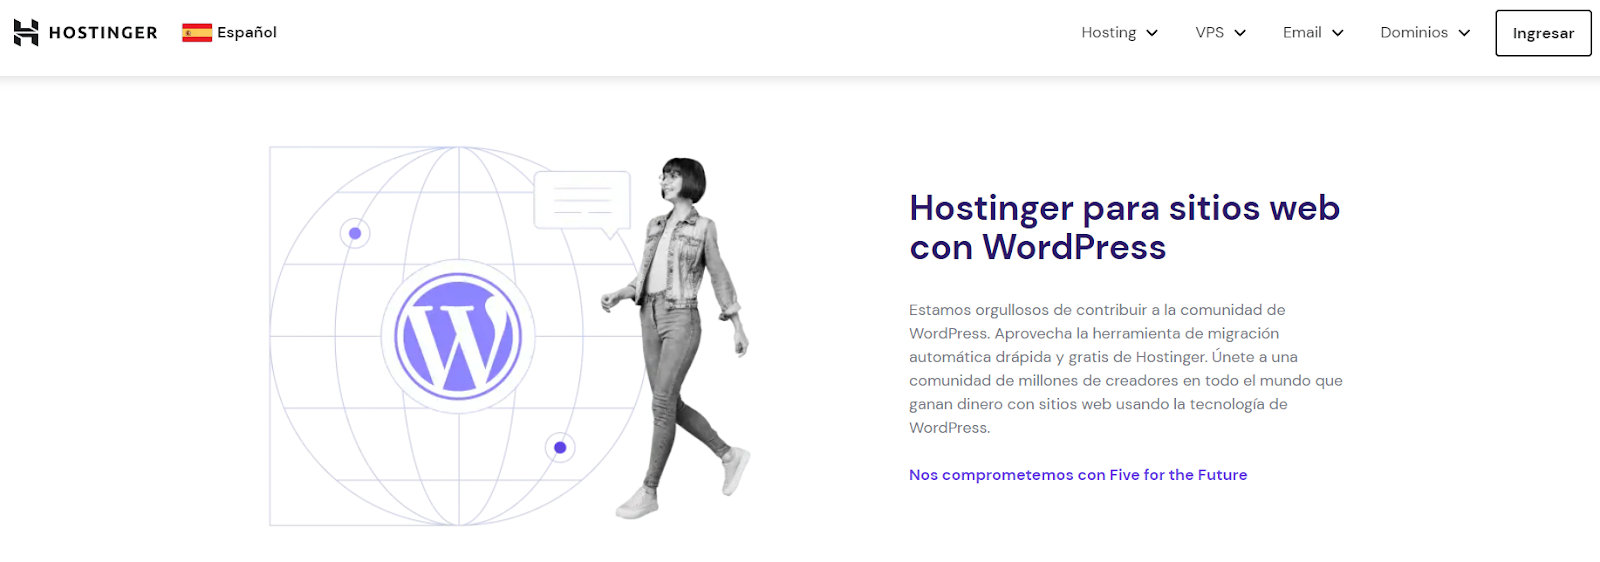 Página de Hosting WordPress de Hostinger